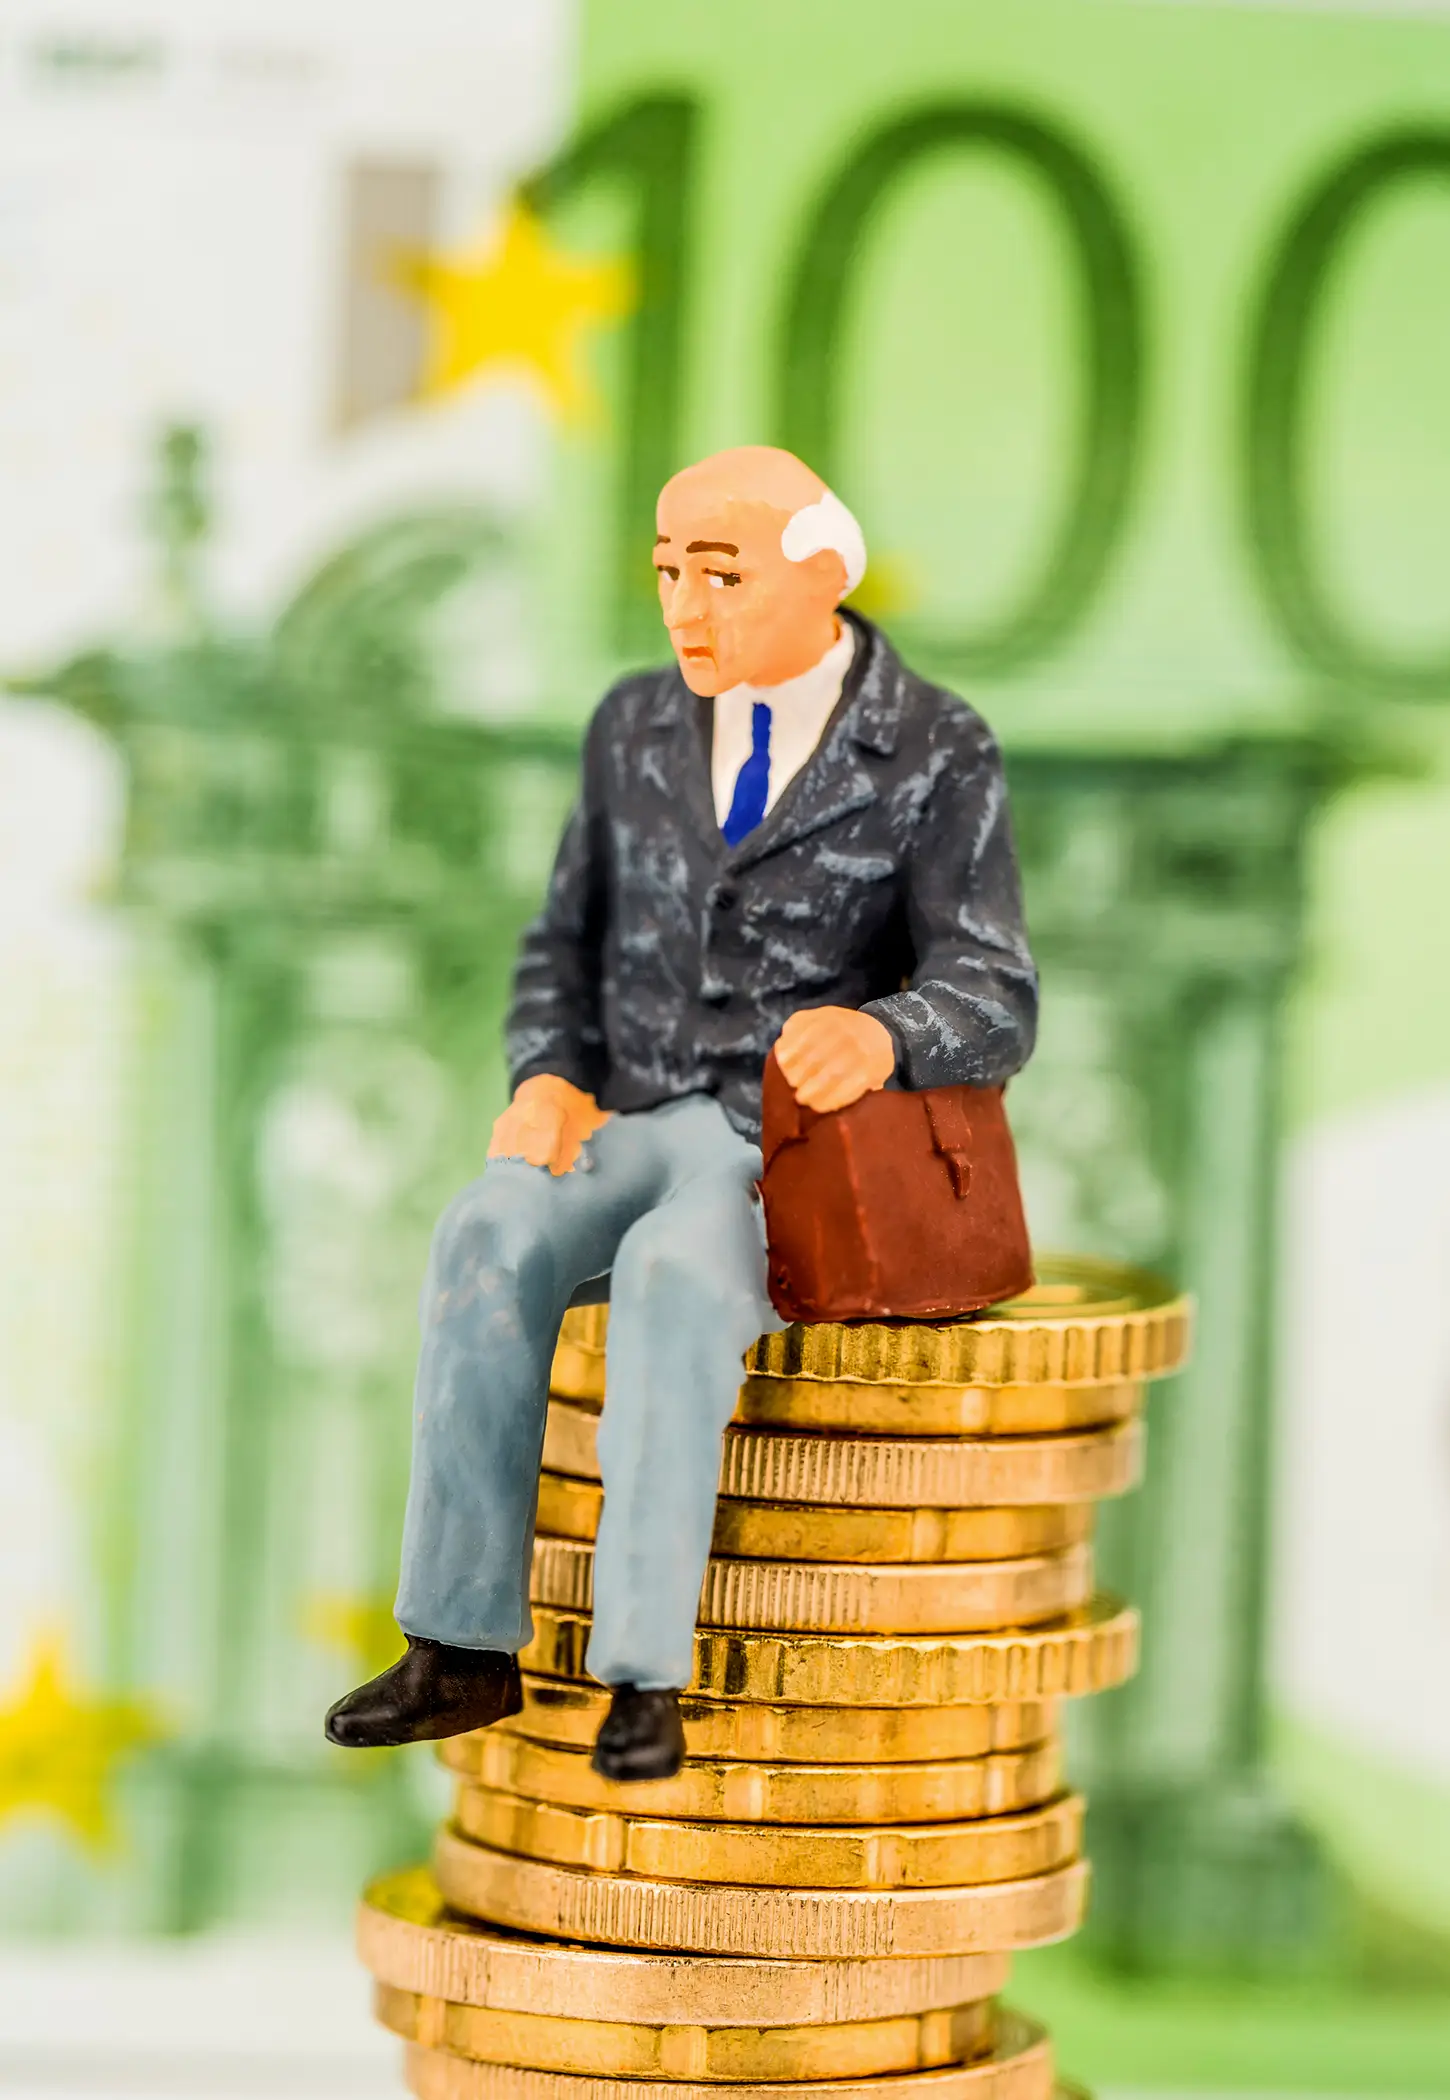 Contas sobre sustentabilidade das pensões são um “exercício de ilusão orçamental”, defende economista Jorge Bravo